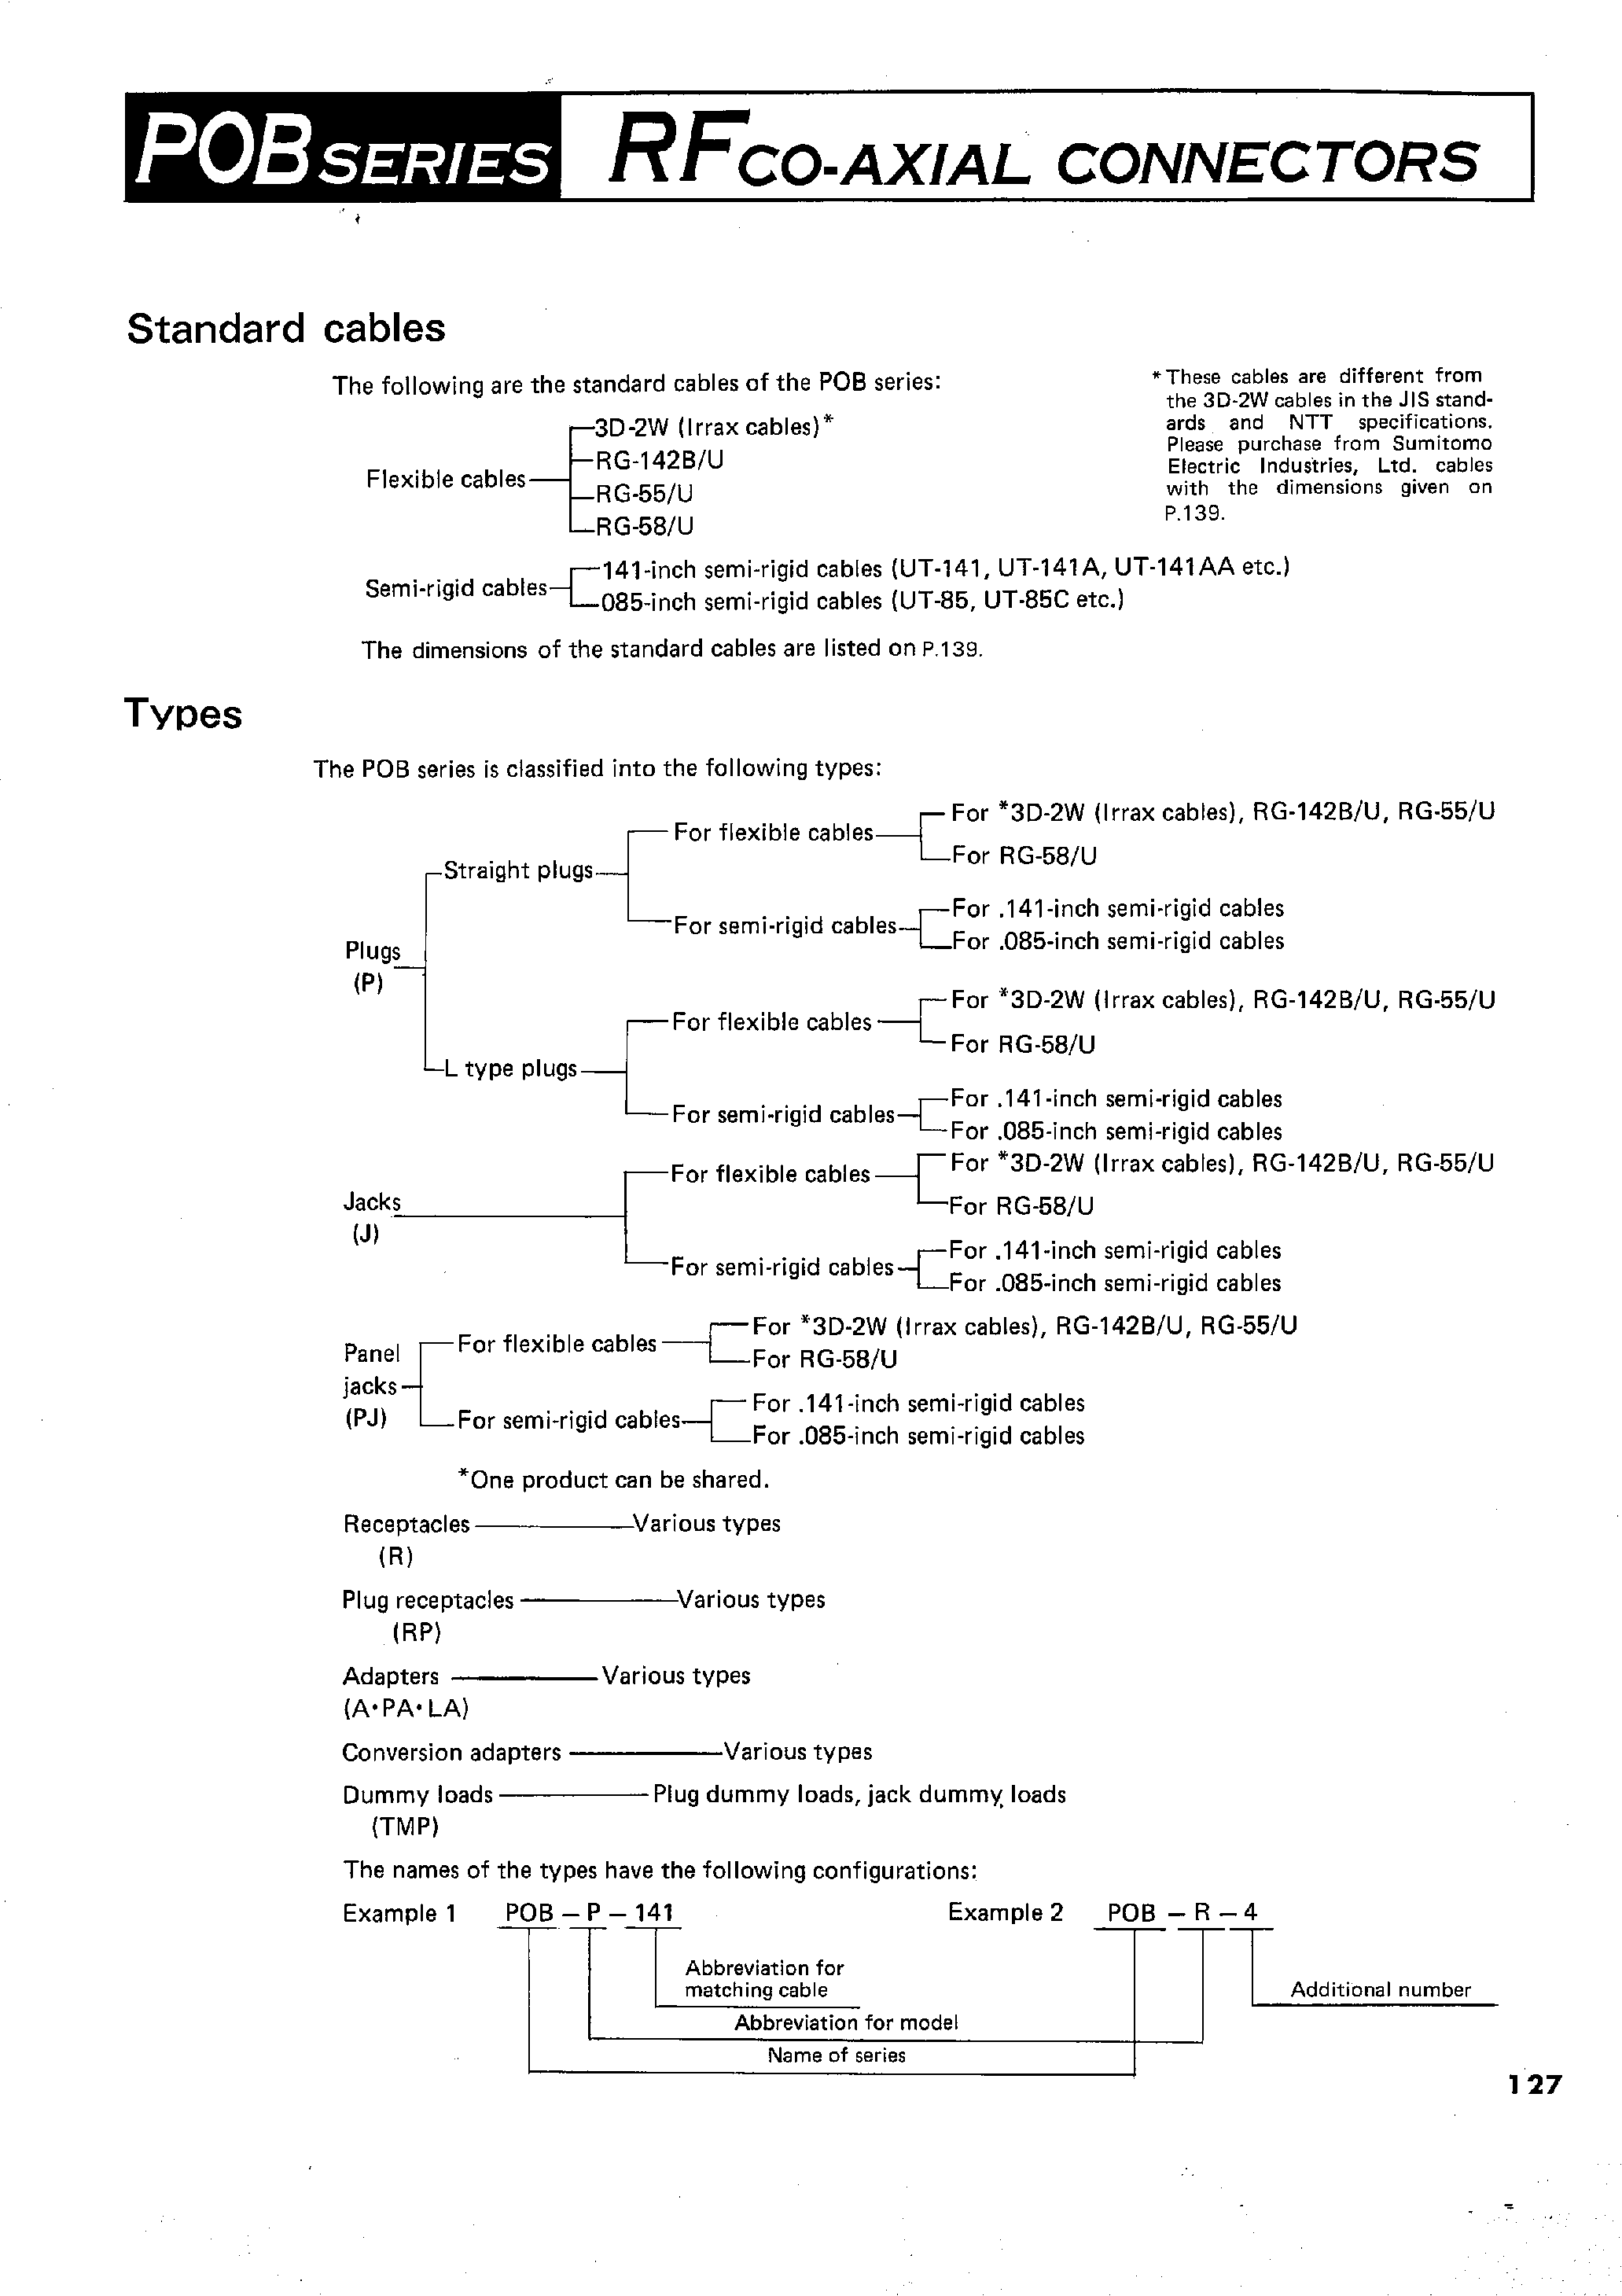 Datasheet POB-PJ-55/U - RFCO-AXIAL CONNECTORS page 2